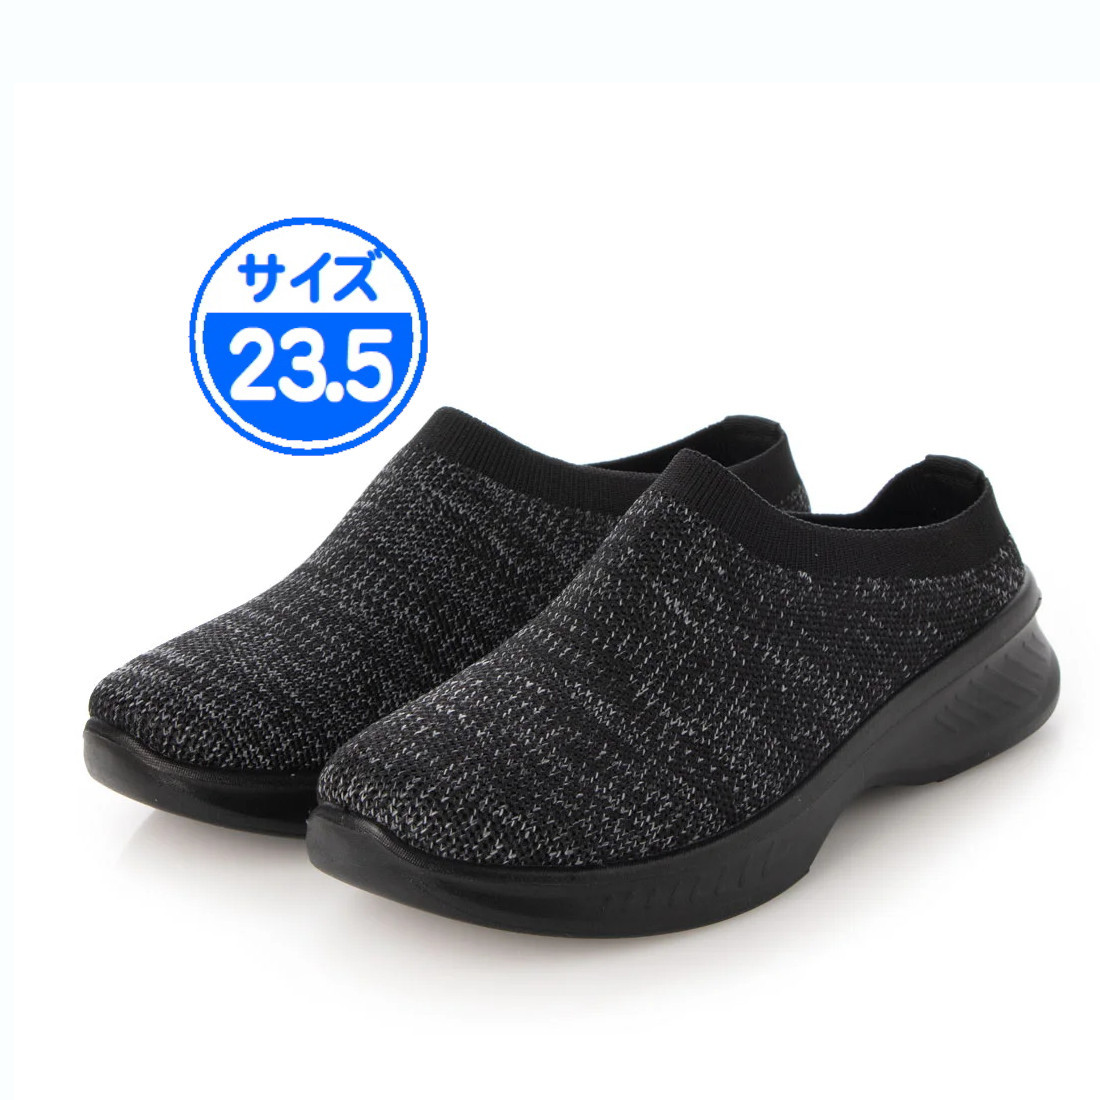 [ новый товар не использовался ]22536 легкий сабо сандалии черный чёрный 23.5cm